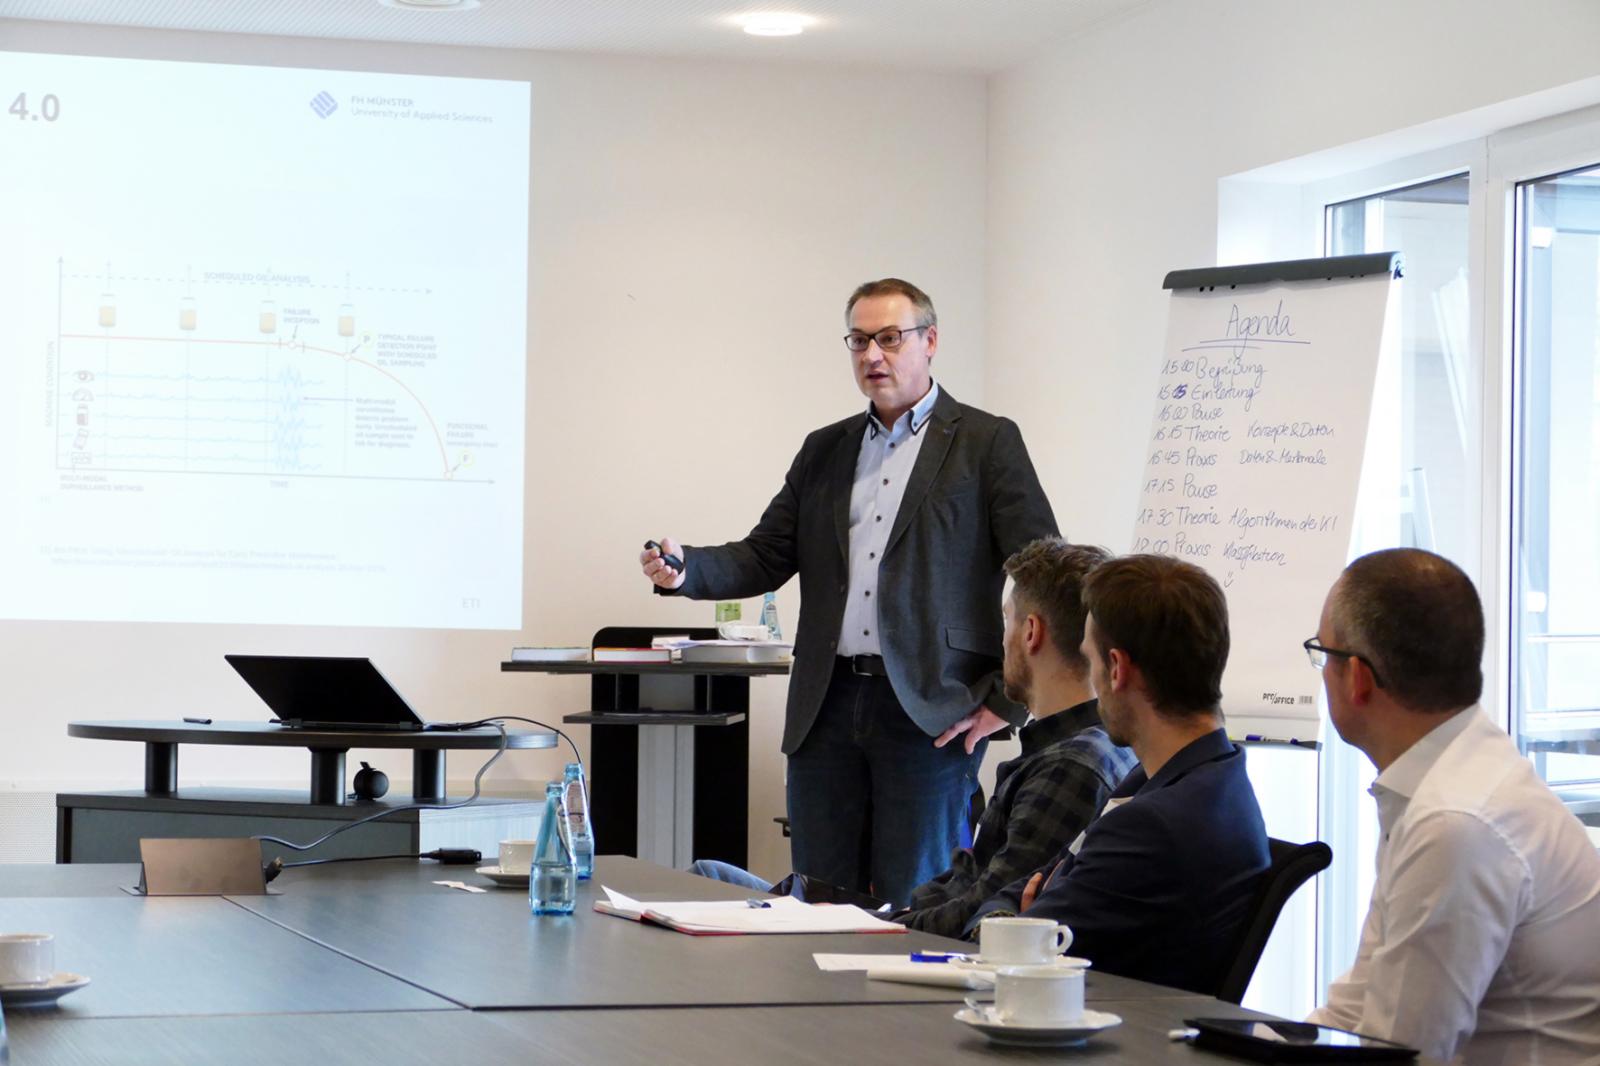 KI-Experte Prof. Dr. Jürgen te Vrugt vermittelte den Workshop-Teilnehmern zunächst theoretische Grundlagen. (Foto: FH Münster/Jana Schiller)